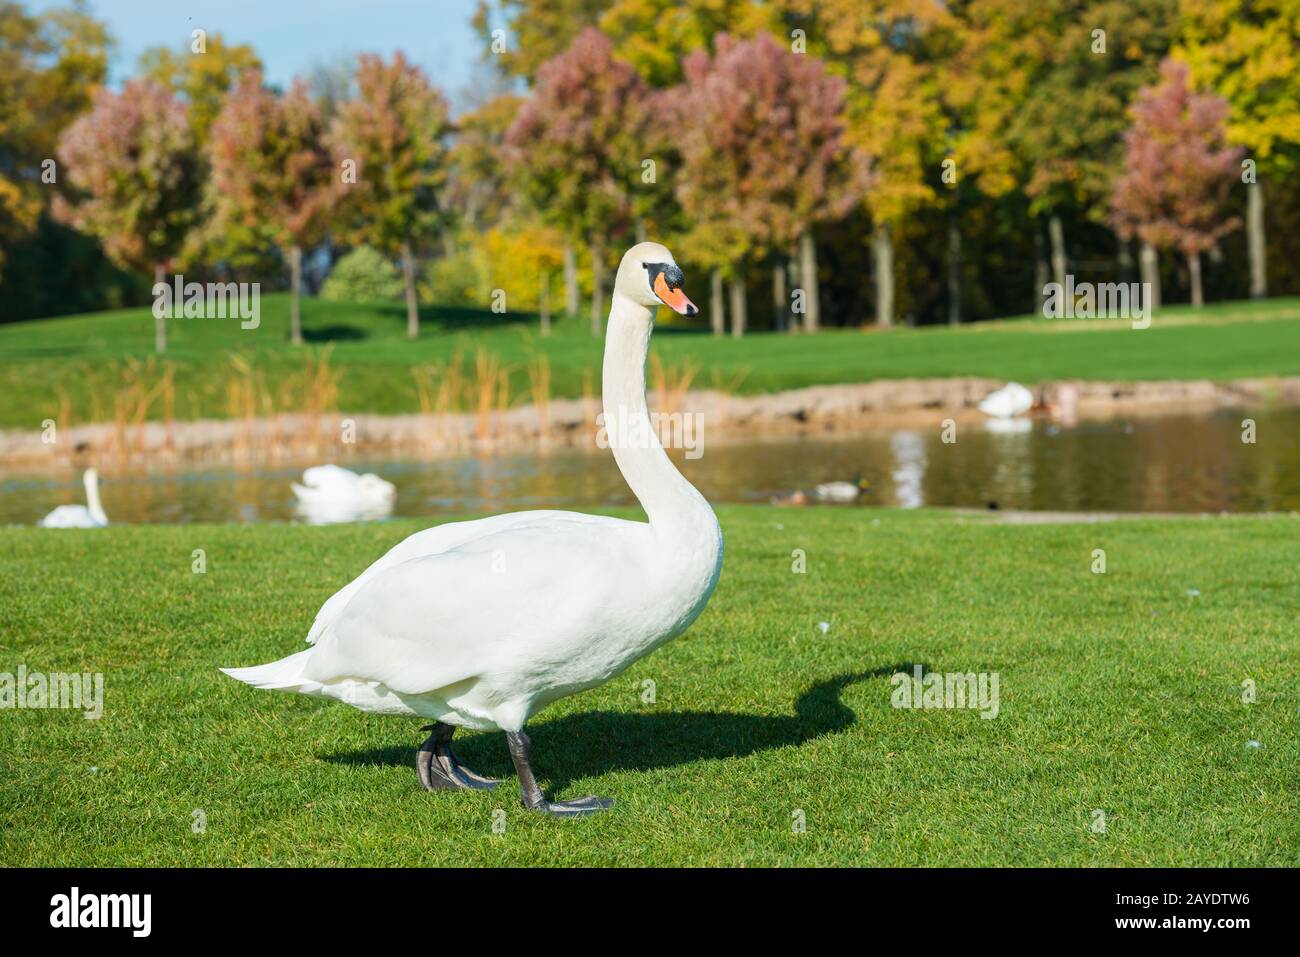 White swan on grass near lake Stock Photo